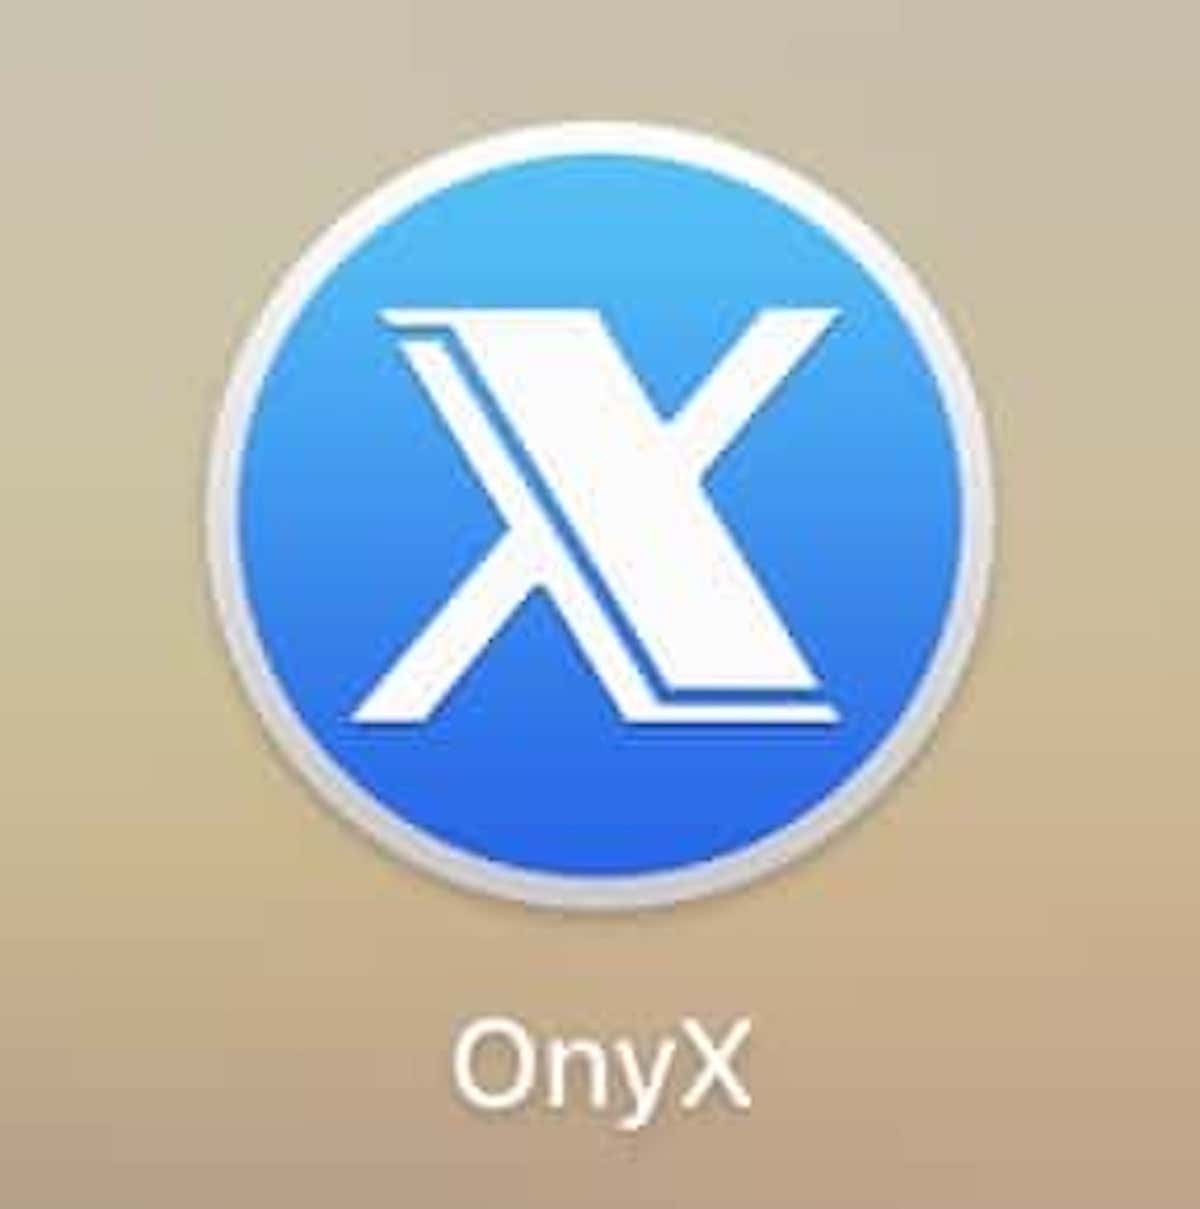 onyx vs mac cleaner vs